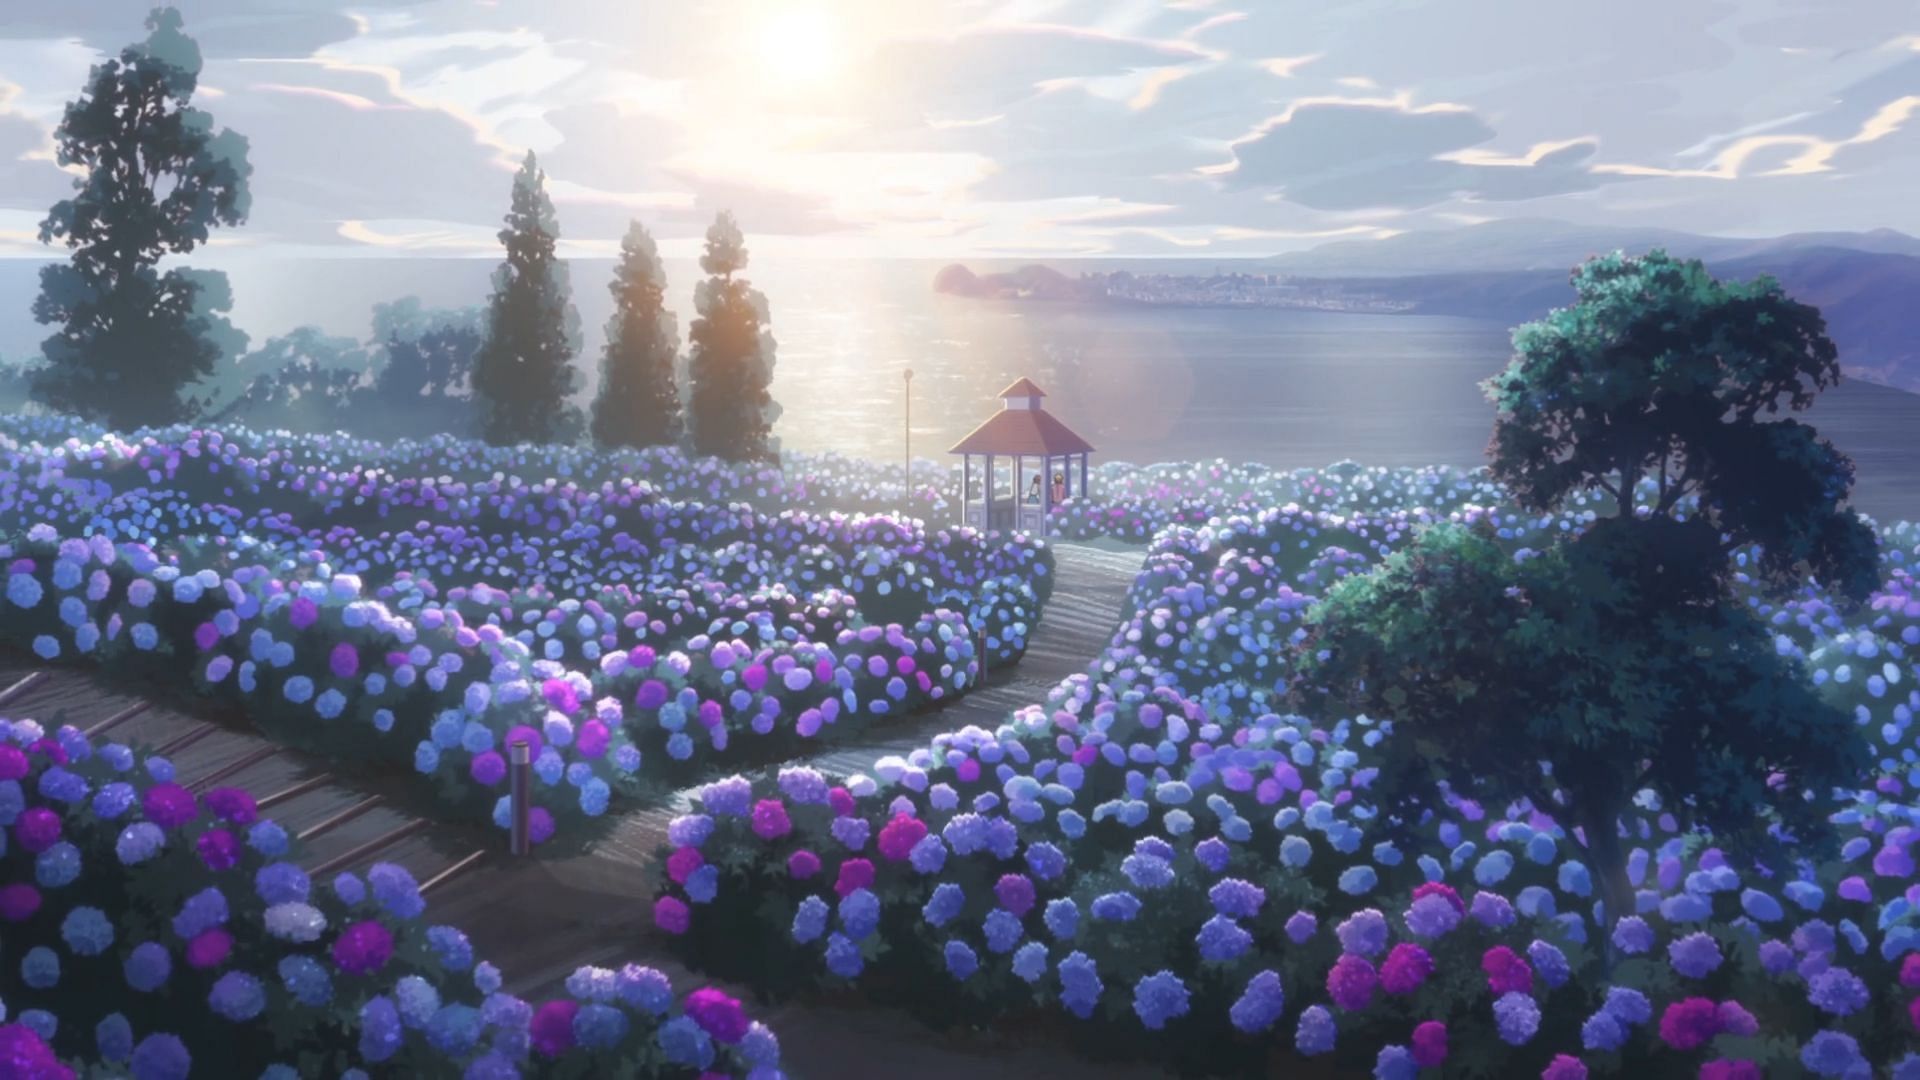 The hydrangea garden where Kazuki met Yuzuha, as seen in Buddy Daddies Episode 7(Image via P.A. Works)